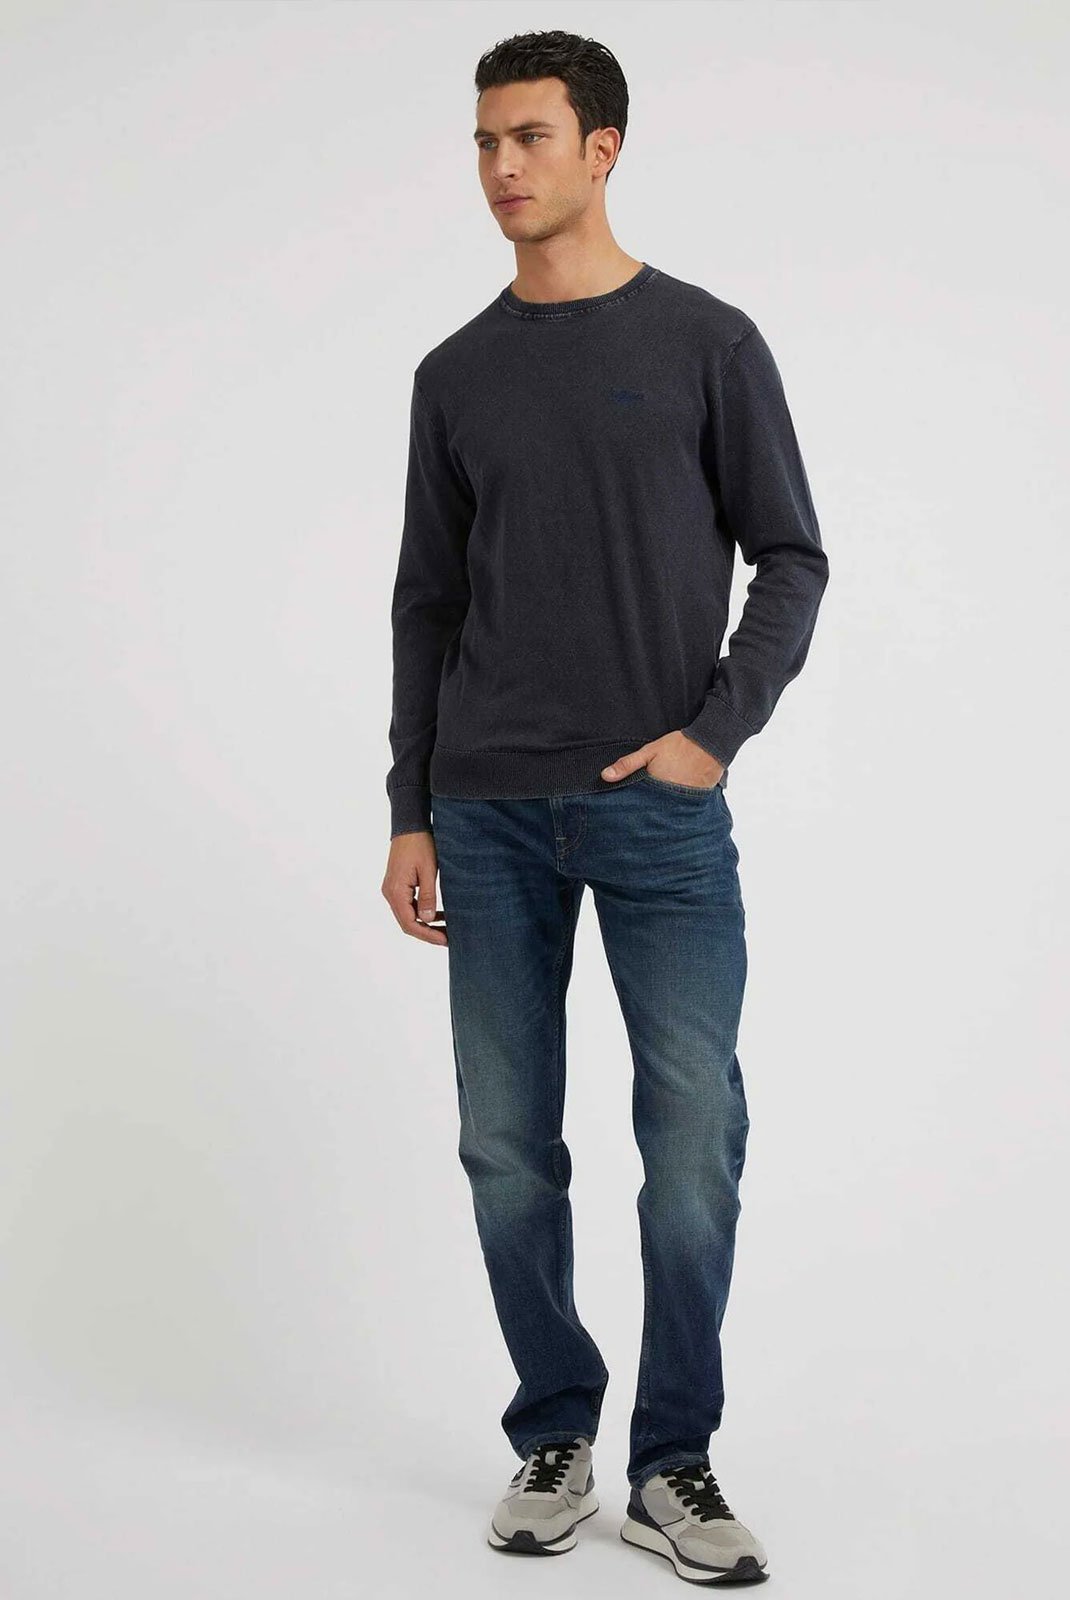 régular  Guess jeans M3BAR4 D56E0 TRCI ANTARCTIC 